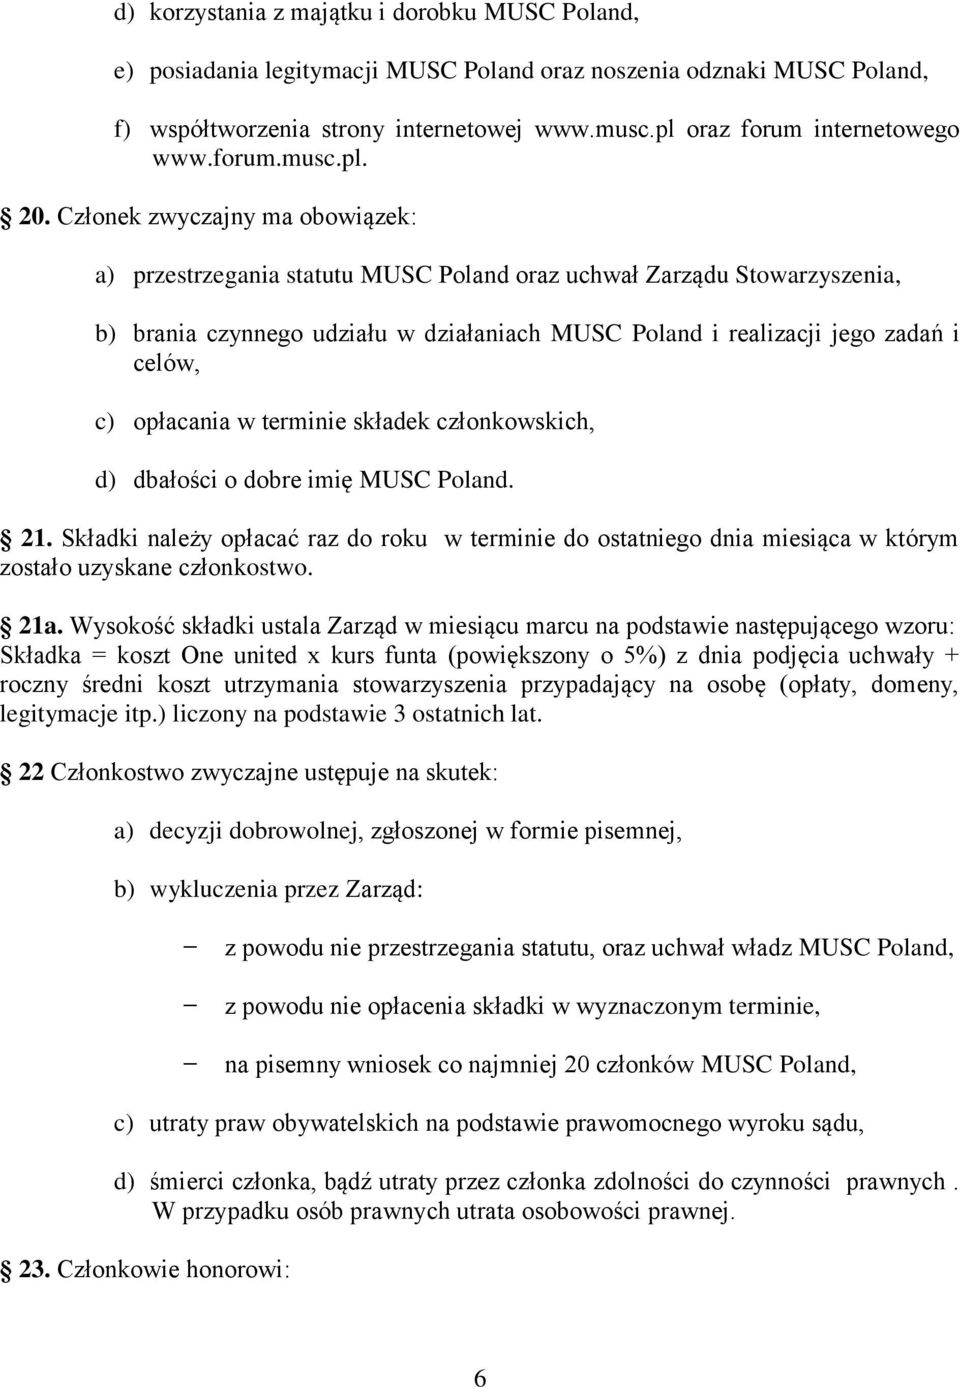 Członek zwyczajny ma obowiązek: a) przestrzegania statutu MUSC Poland oraz uchwał Zarządu Stowarzyszenia, b) brania czynnego udziału w działaniach MUSC Poland i realizacji jego zadań i celów, c)